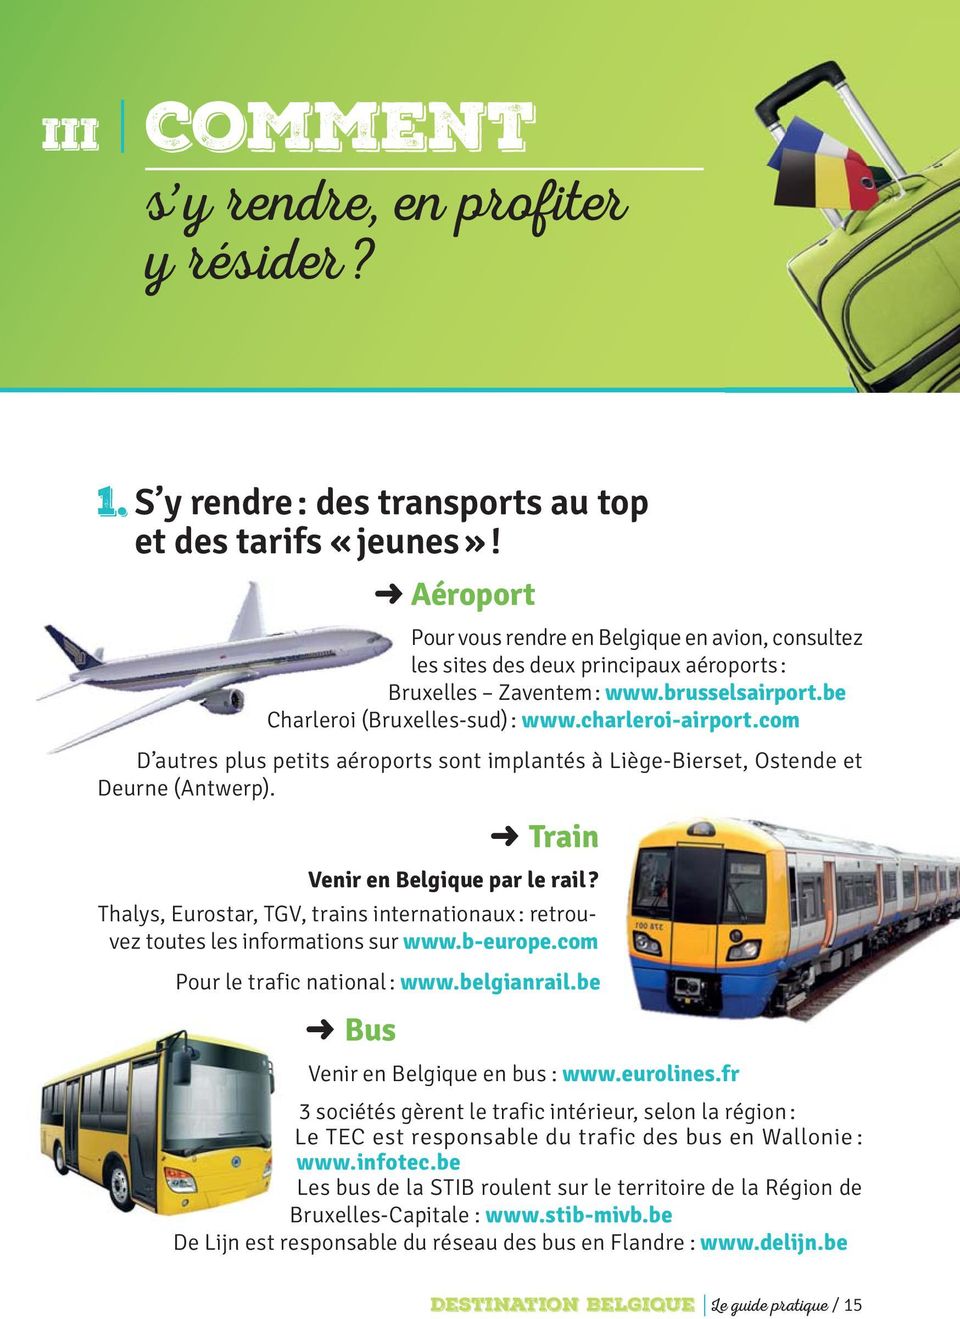 com D autres plus petits aéroports sont implantés à Liège-Bierset, Ostende et Deurne (Antwerp). Train Venir en Belgique par le rail?